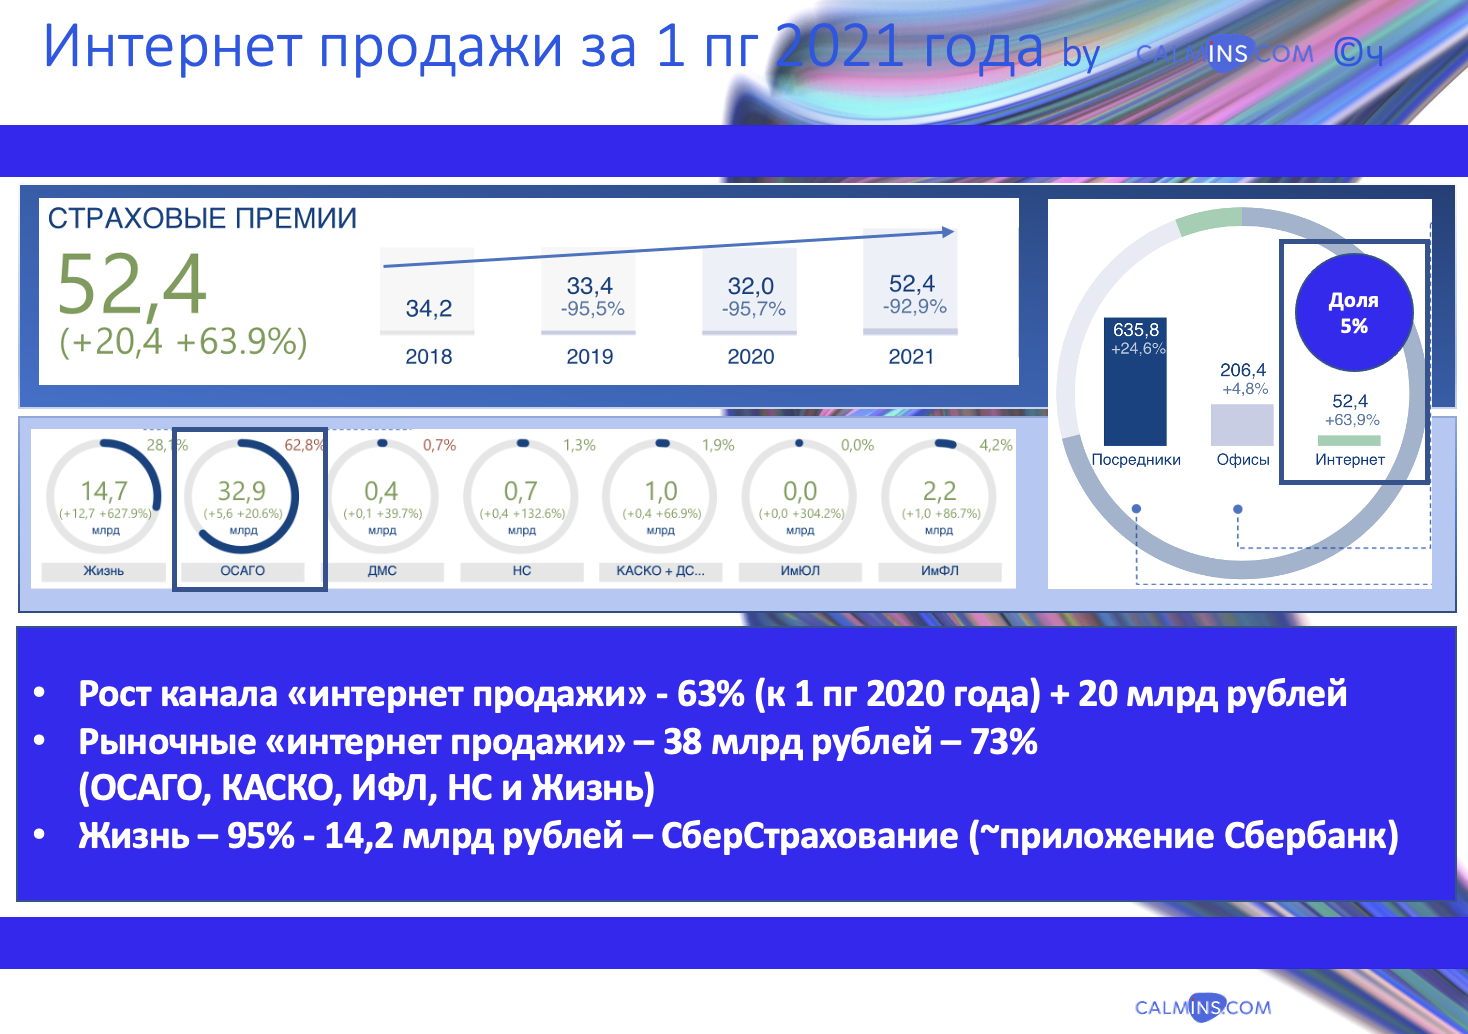 Продажи страховок онлайн выросли до 52 млрд рублей